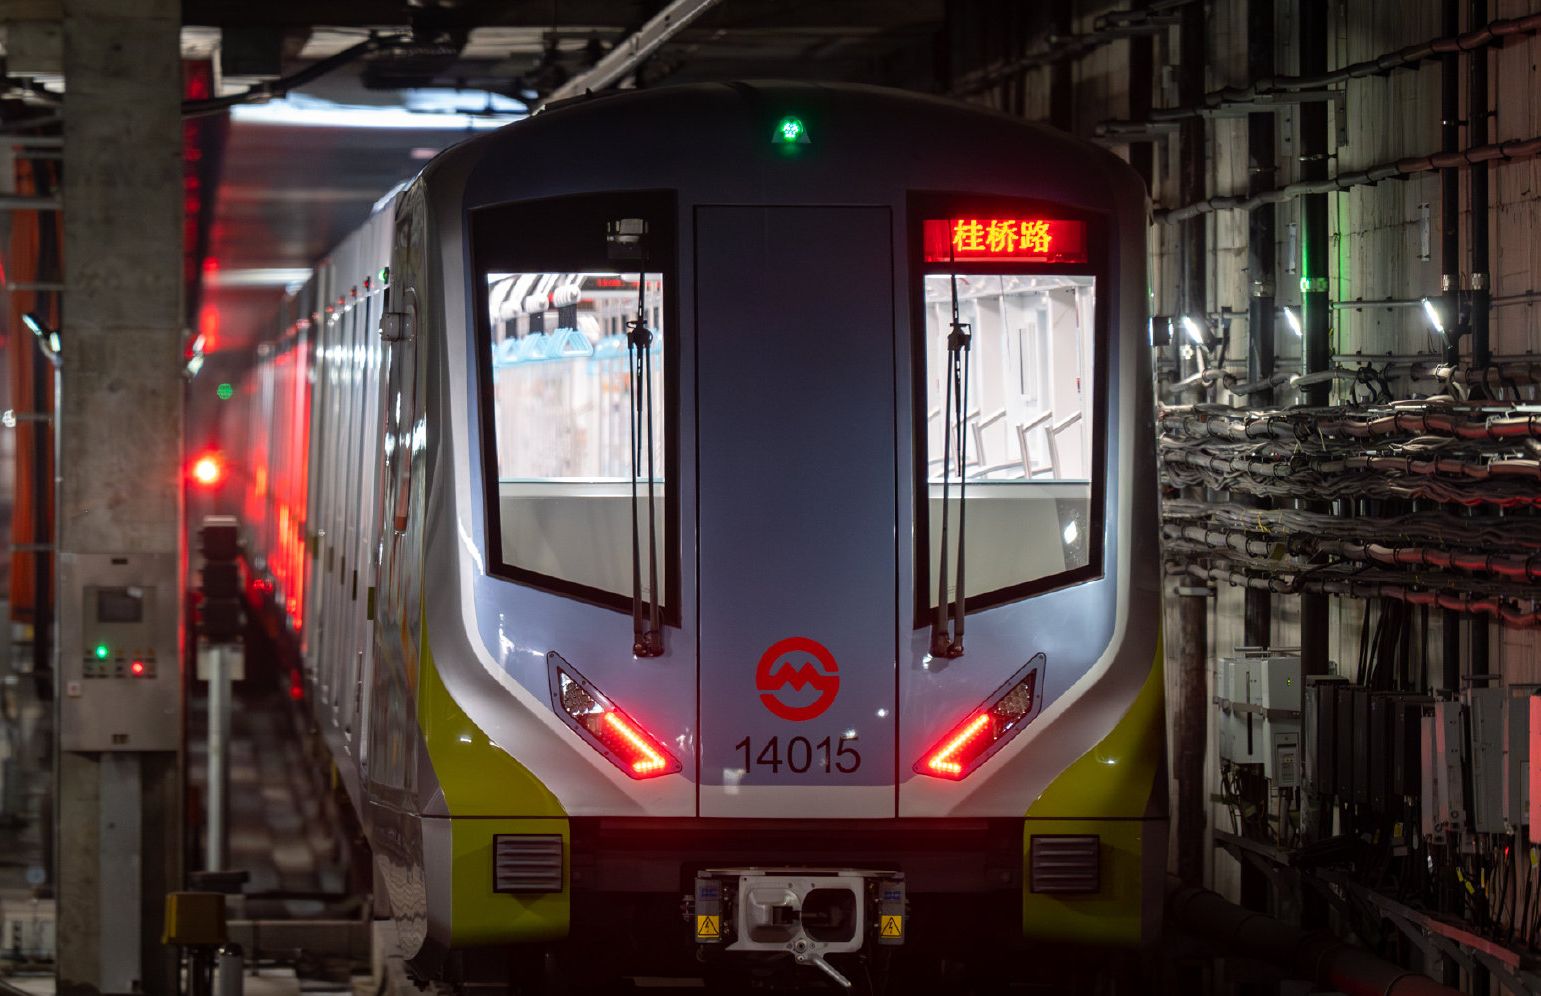 上海地铁14号线14a01型列车进站 摄于真如 往封浜方向